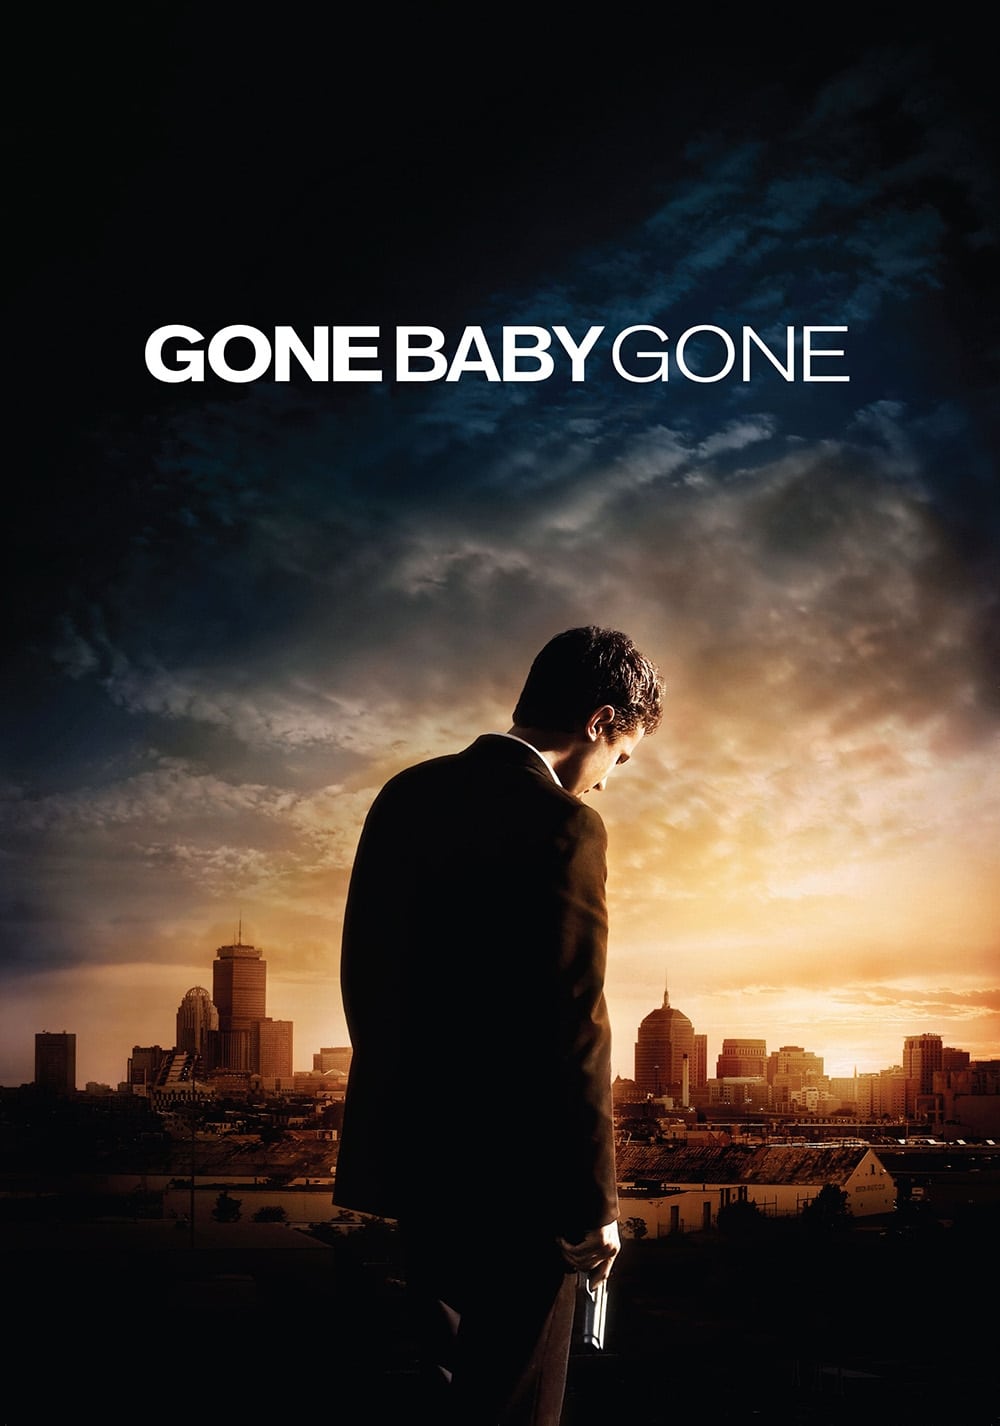 Đứa Bé Mất Tích (Gone Baby Gone) [2007]